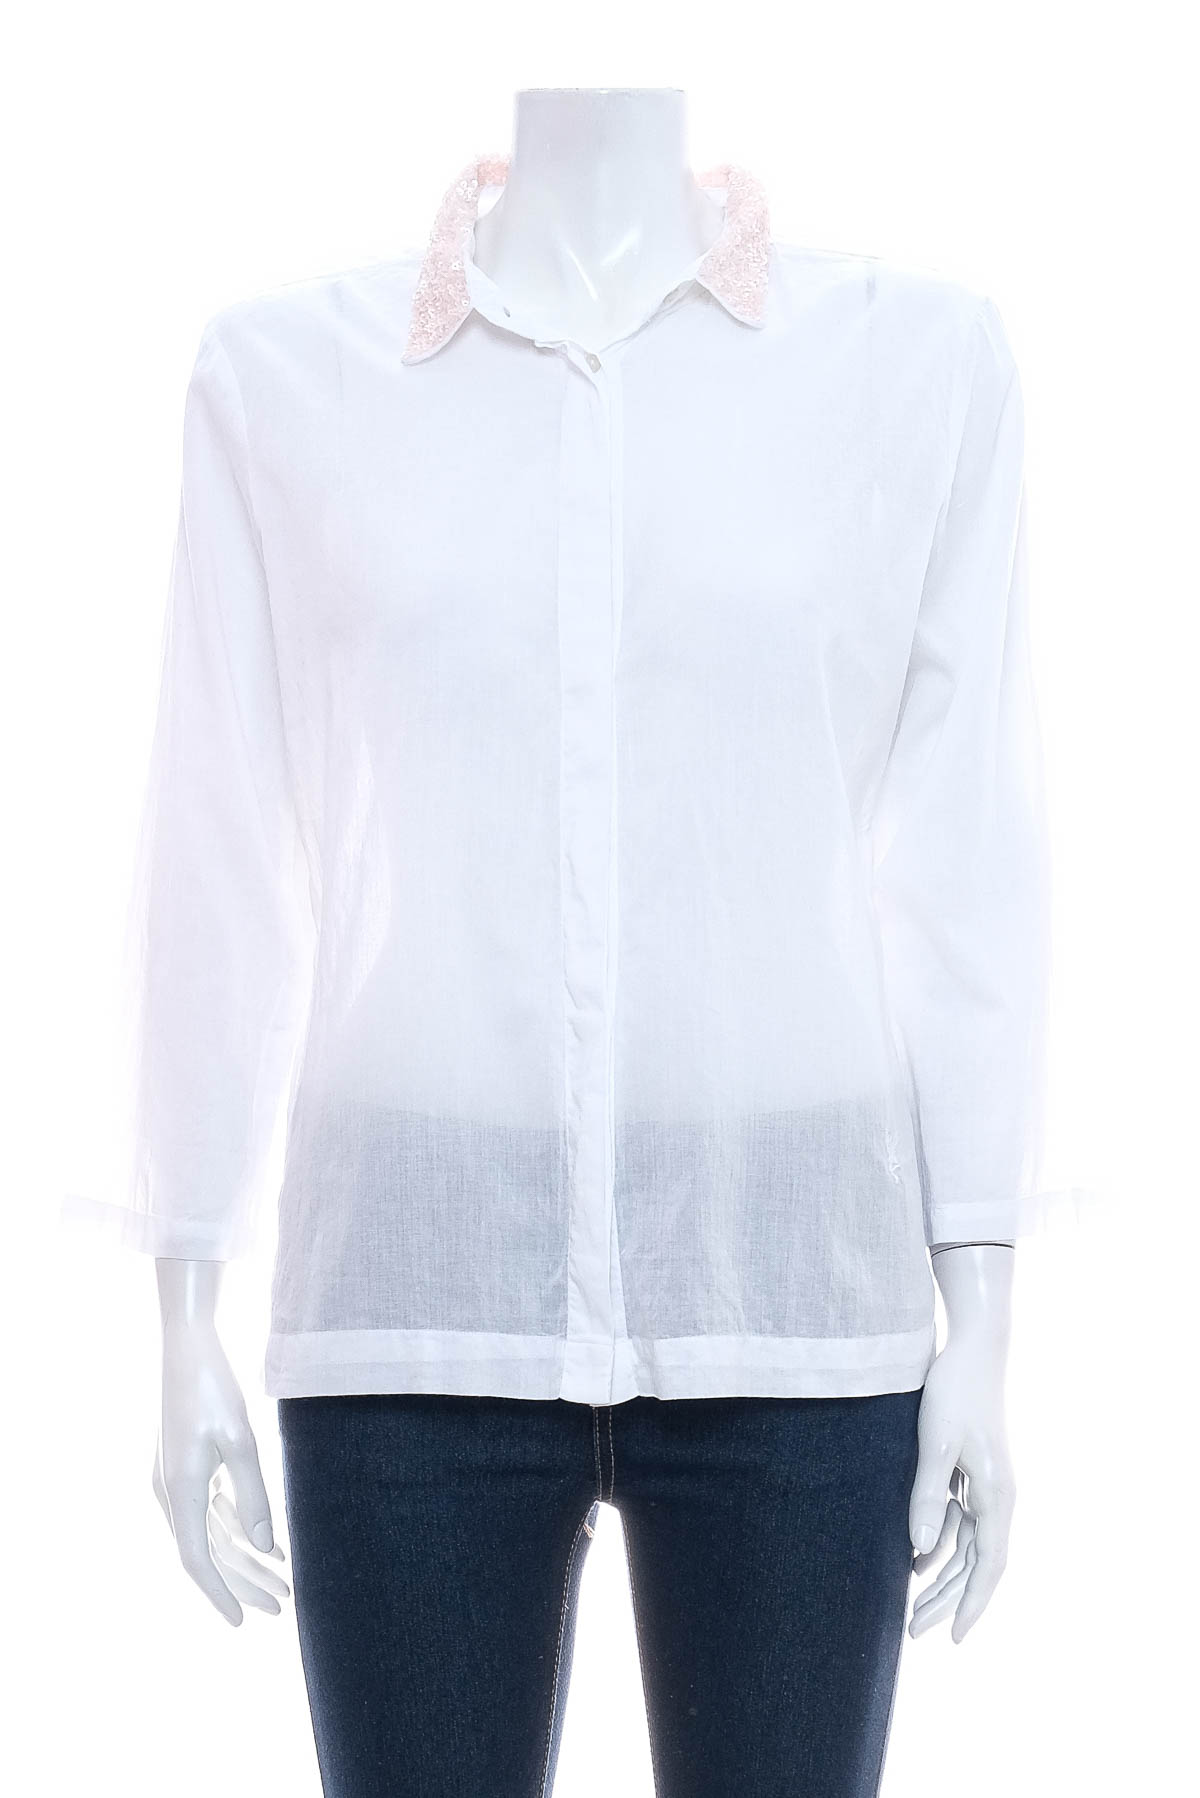 Γυναικείо πουκάμισο - EMILY VAN DEN BERGH - 0